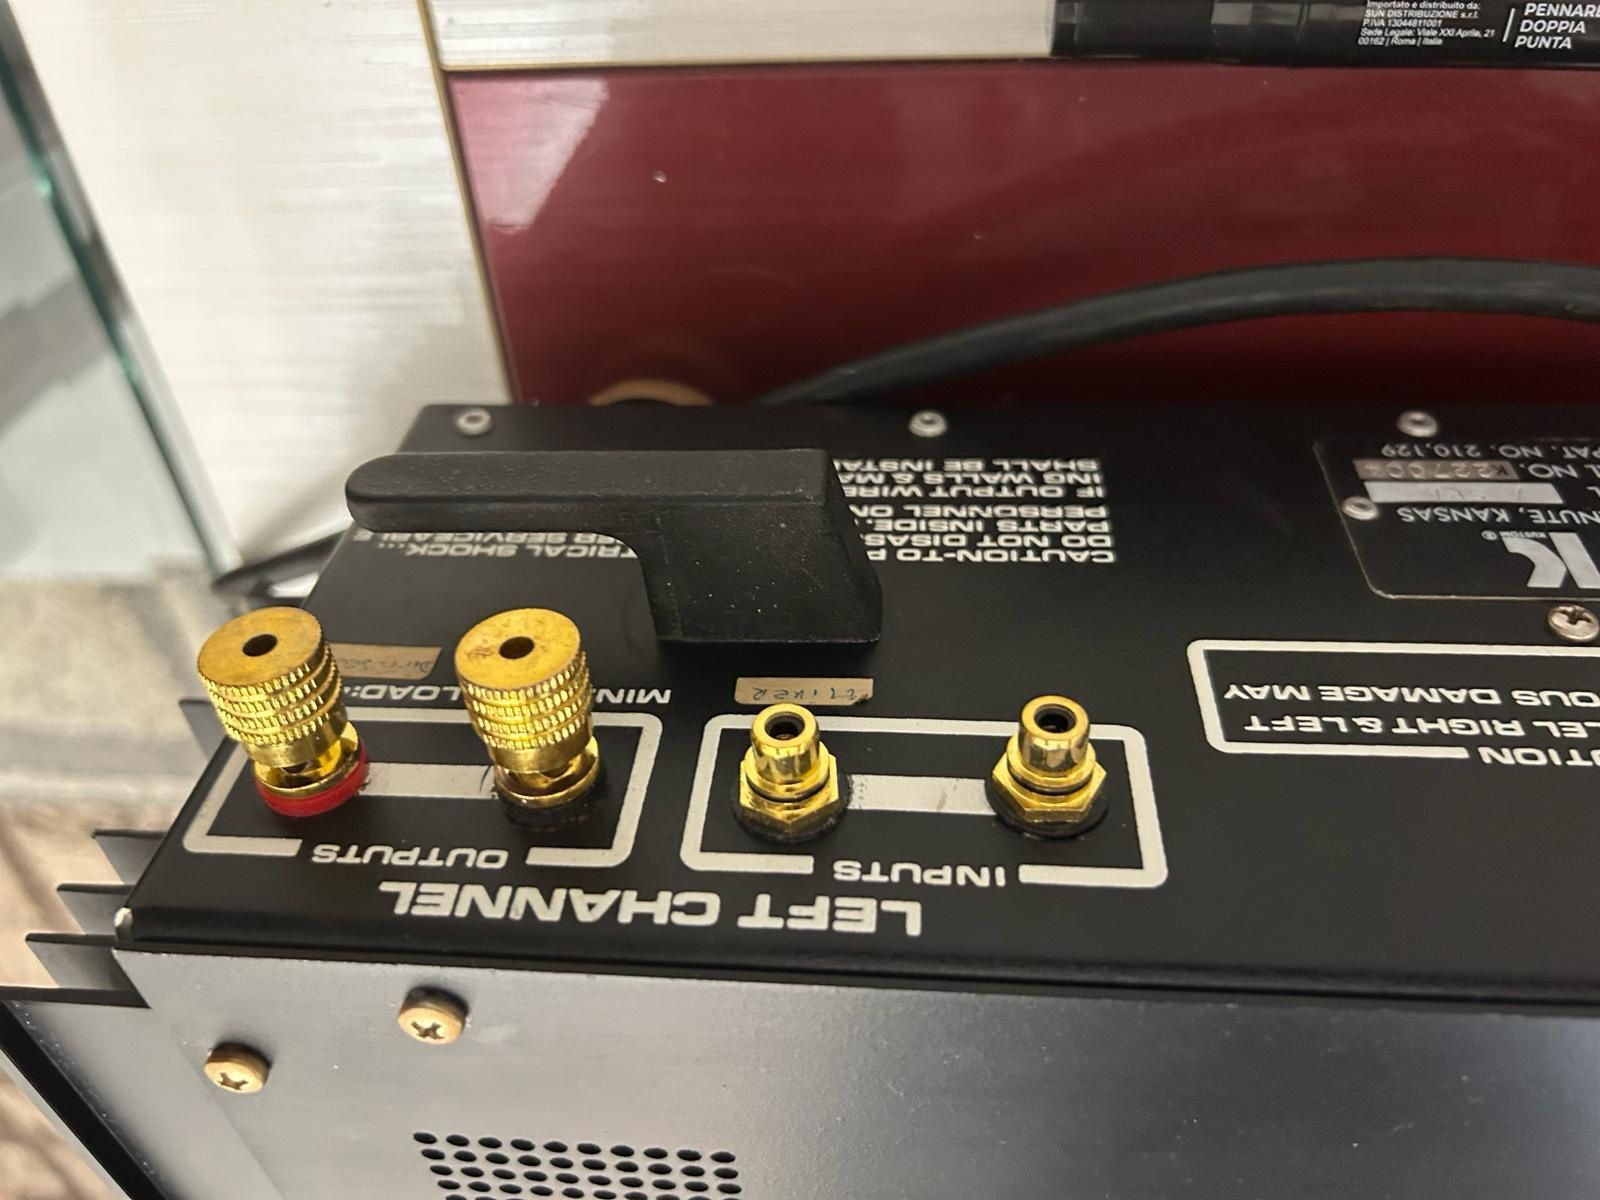 Amplificator putere usa fabricatie 1970 germaniu impecabila high end